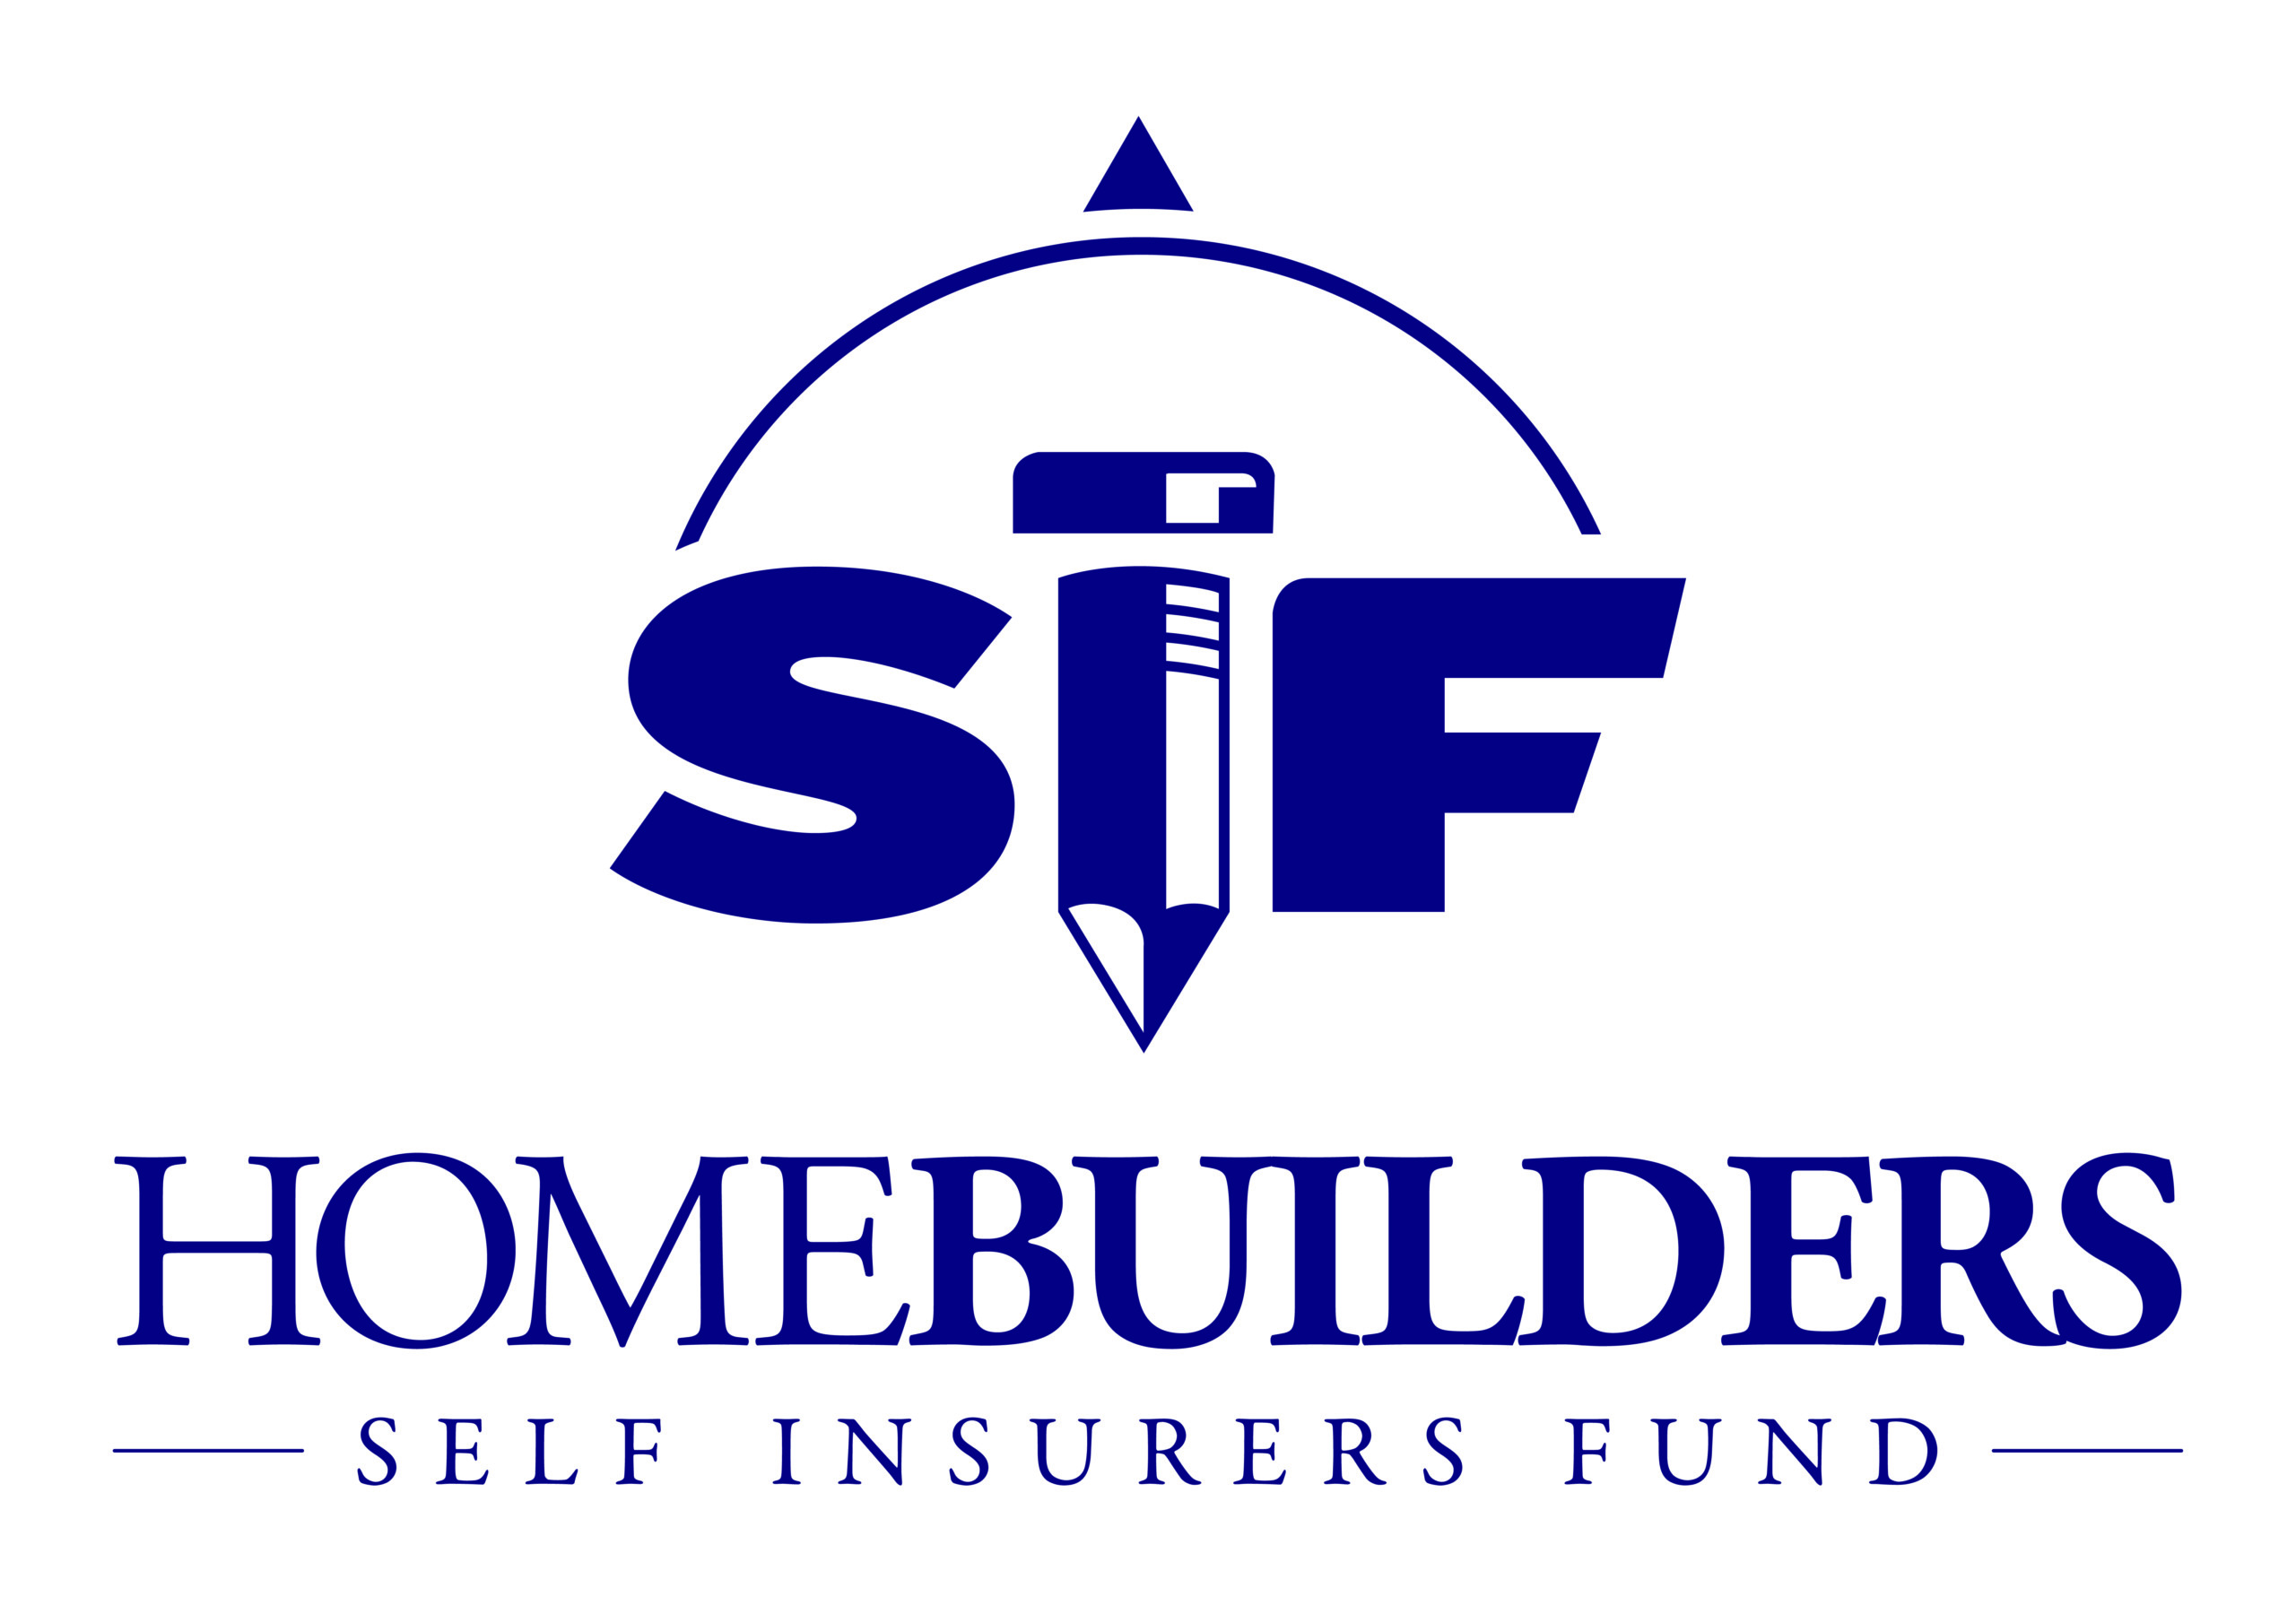 Homebuilders Self Insurers Fund Parade of Homes Sponsor Logo